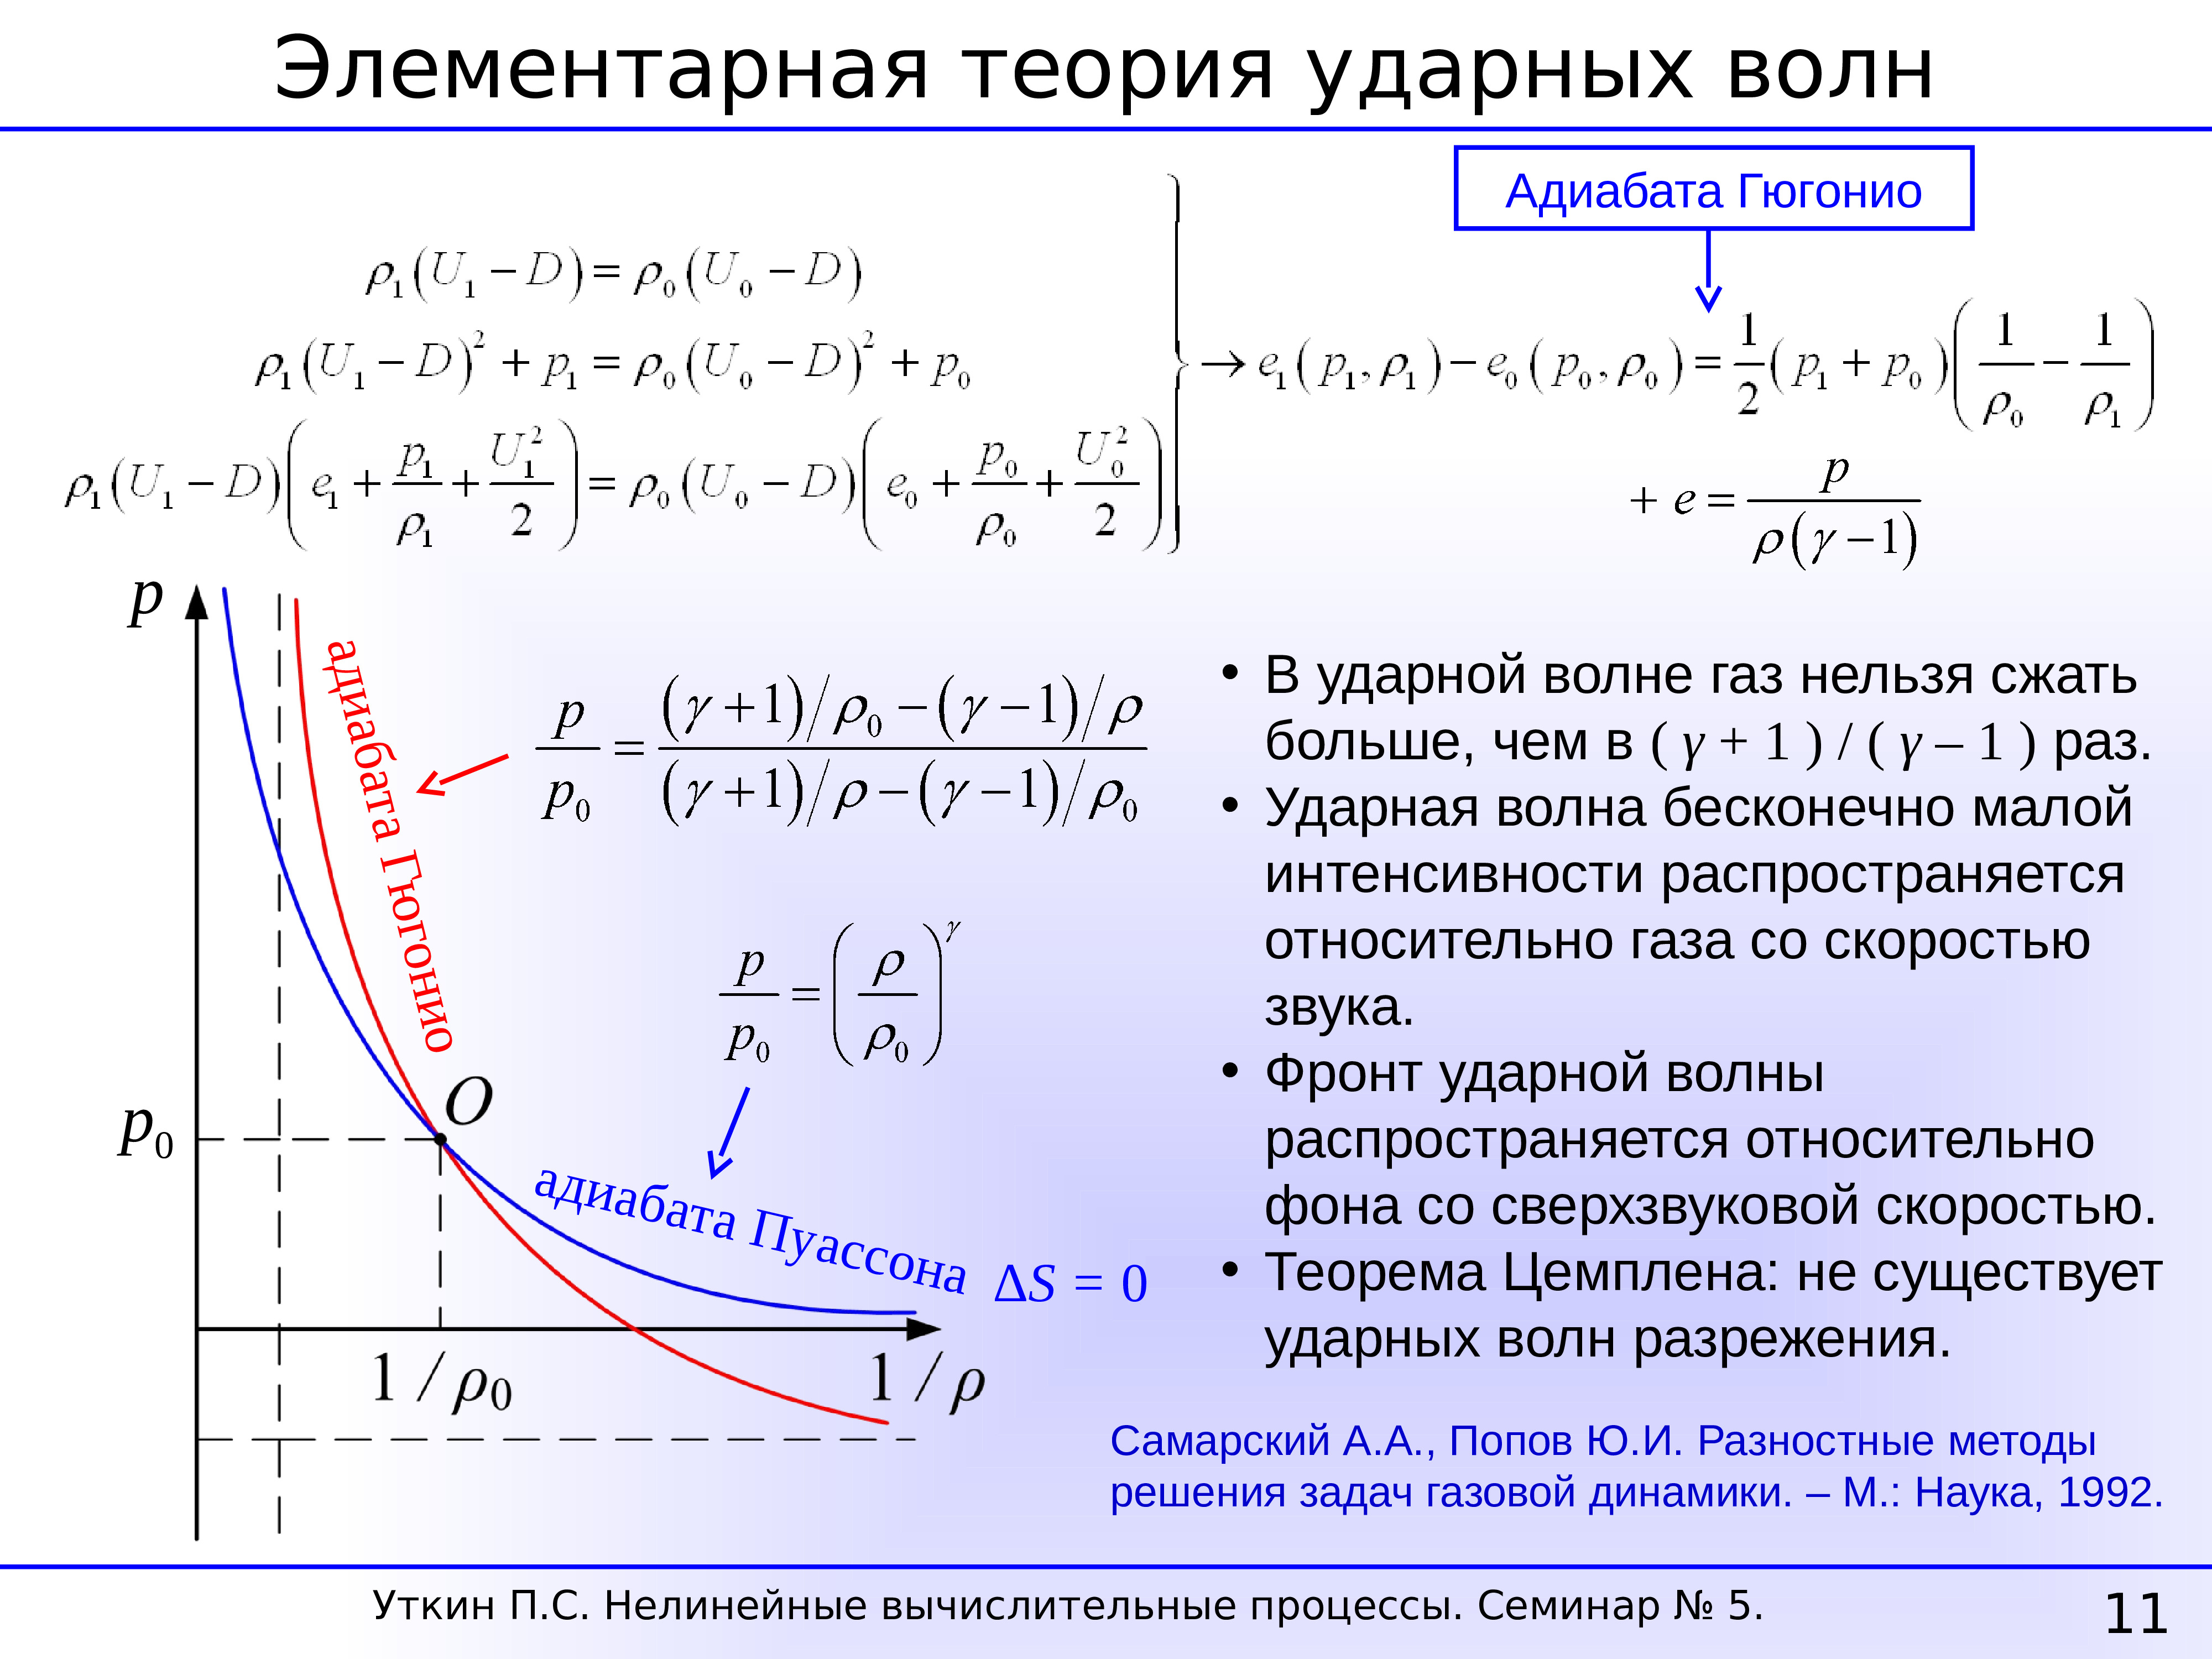 Формула адиабатического расширения